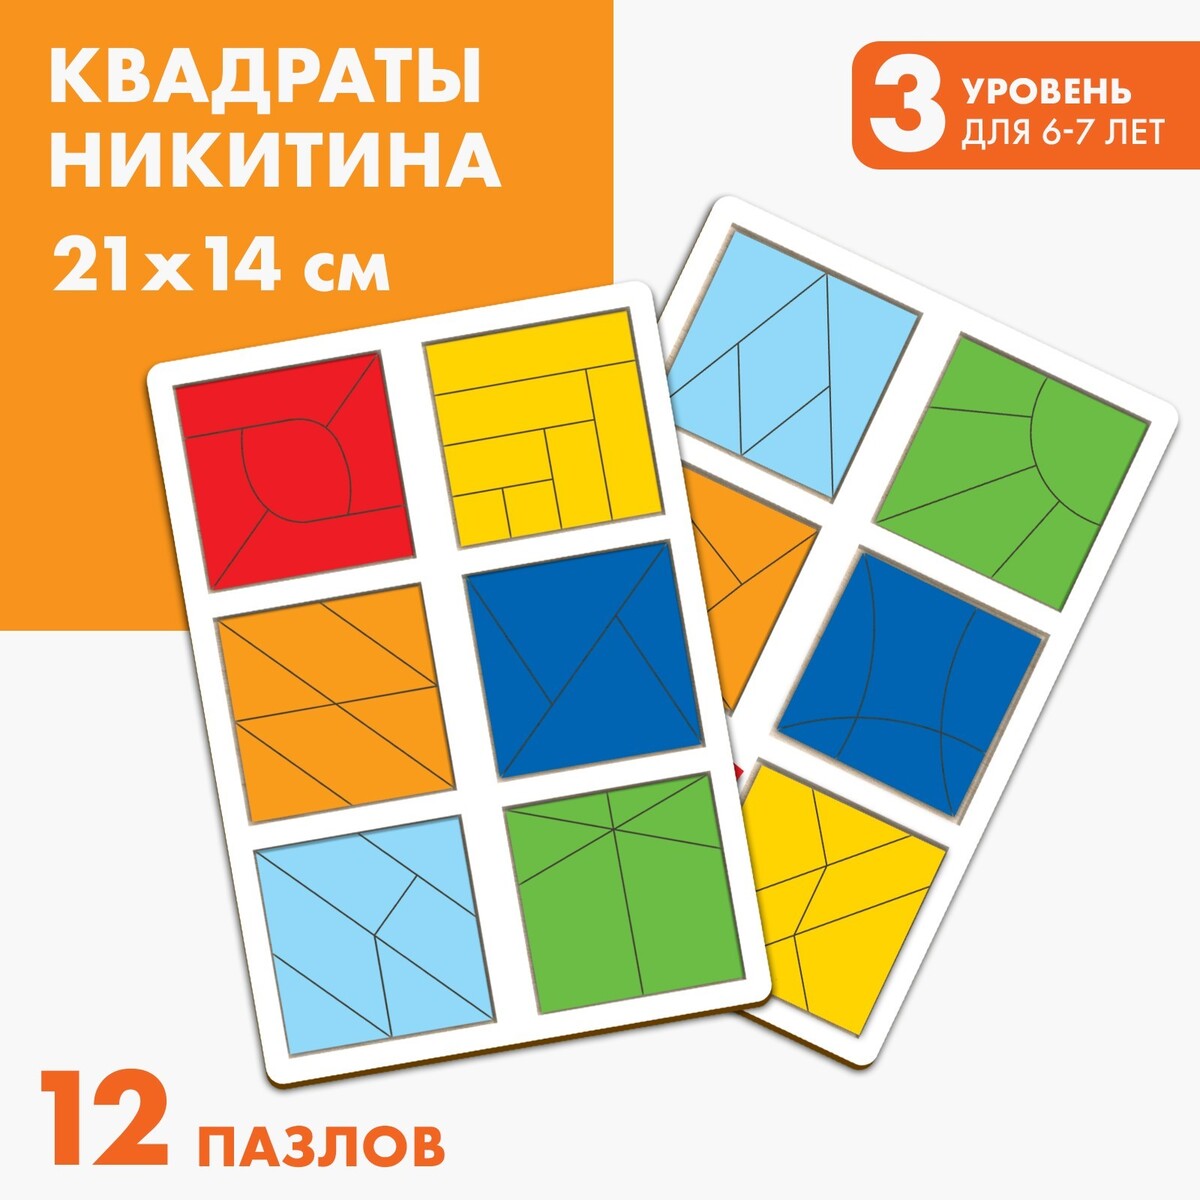 Квадраты никитина 3 уровень (2 шт.), 12 квадратов